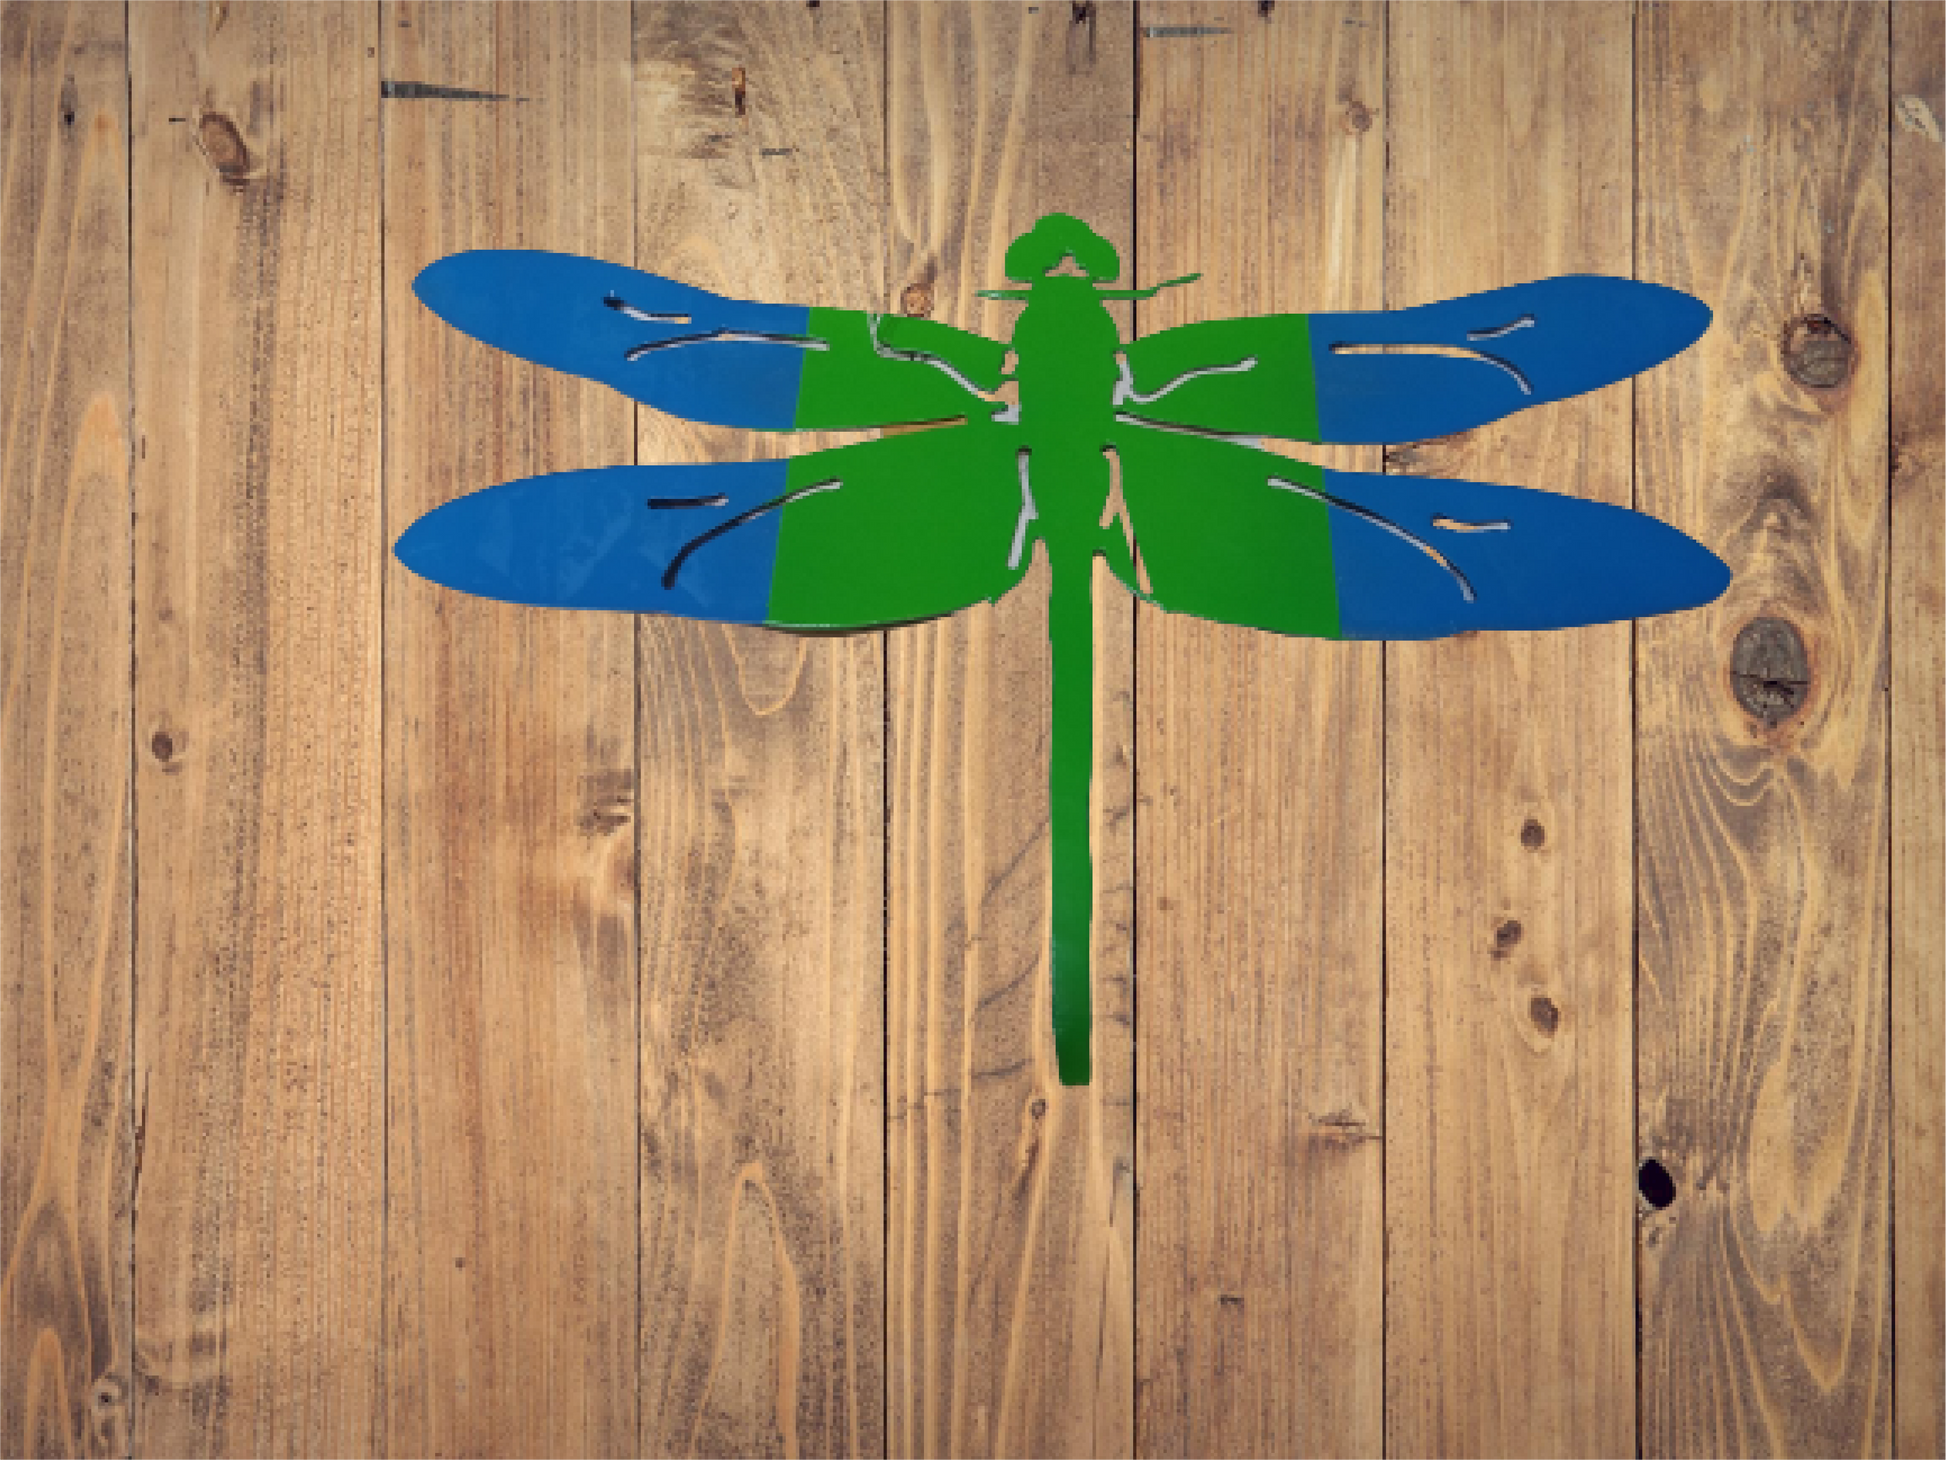 Dragonfly - Cutting Edge Design LLC